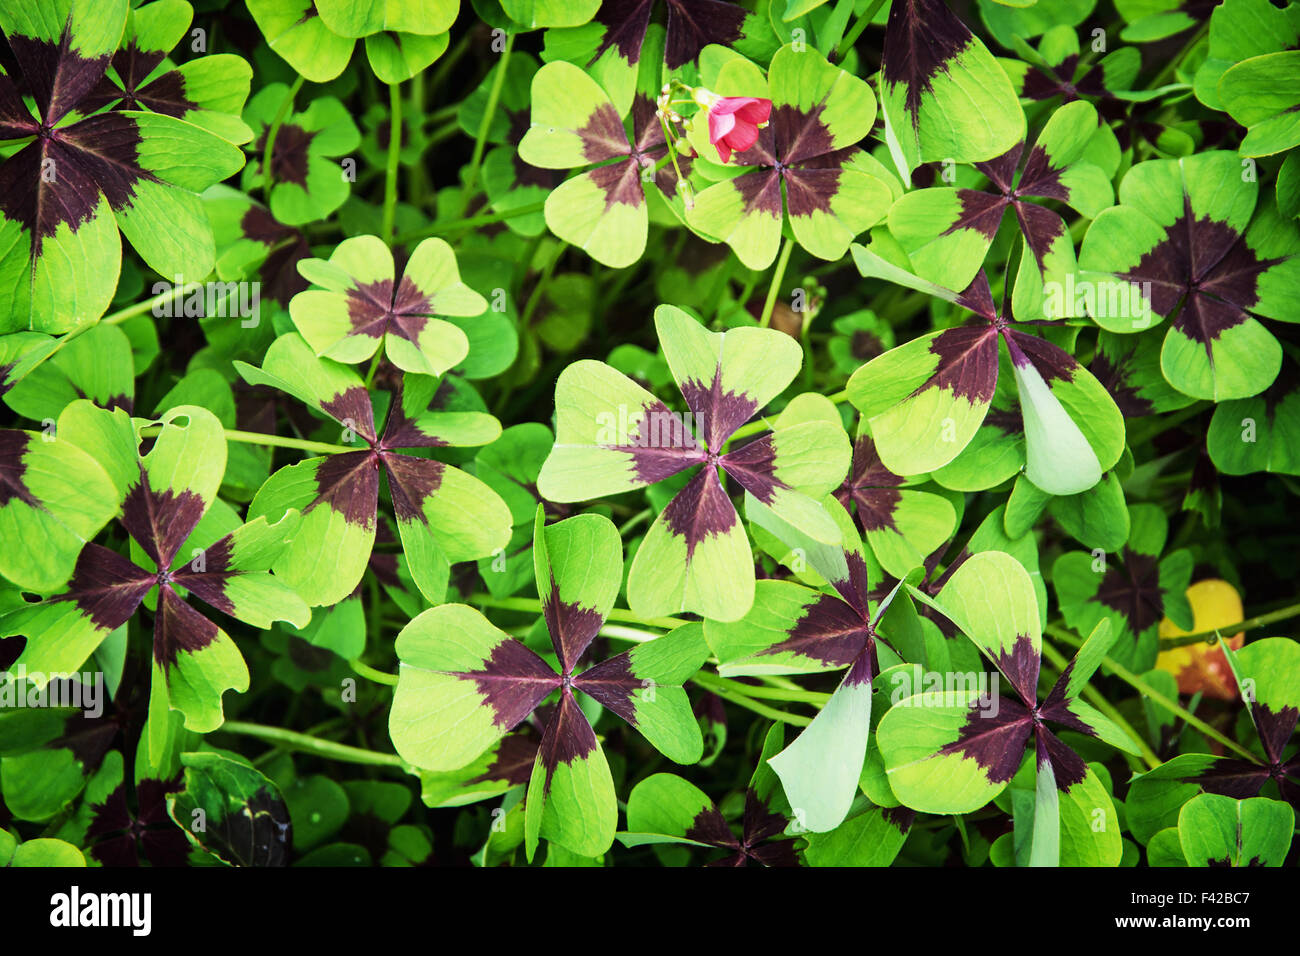 Oxalis tetraphylla (Oxalis deppei) plant. Natural background. Stock Photo